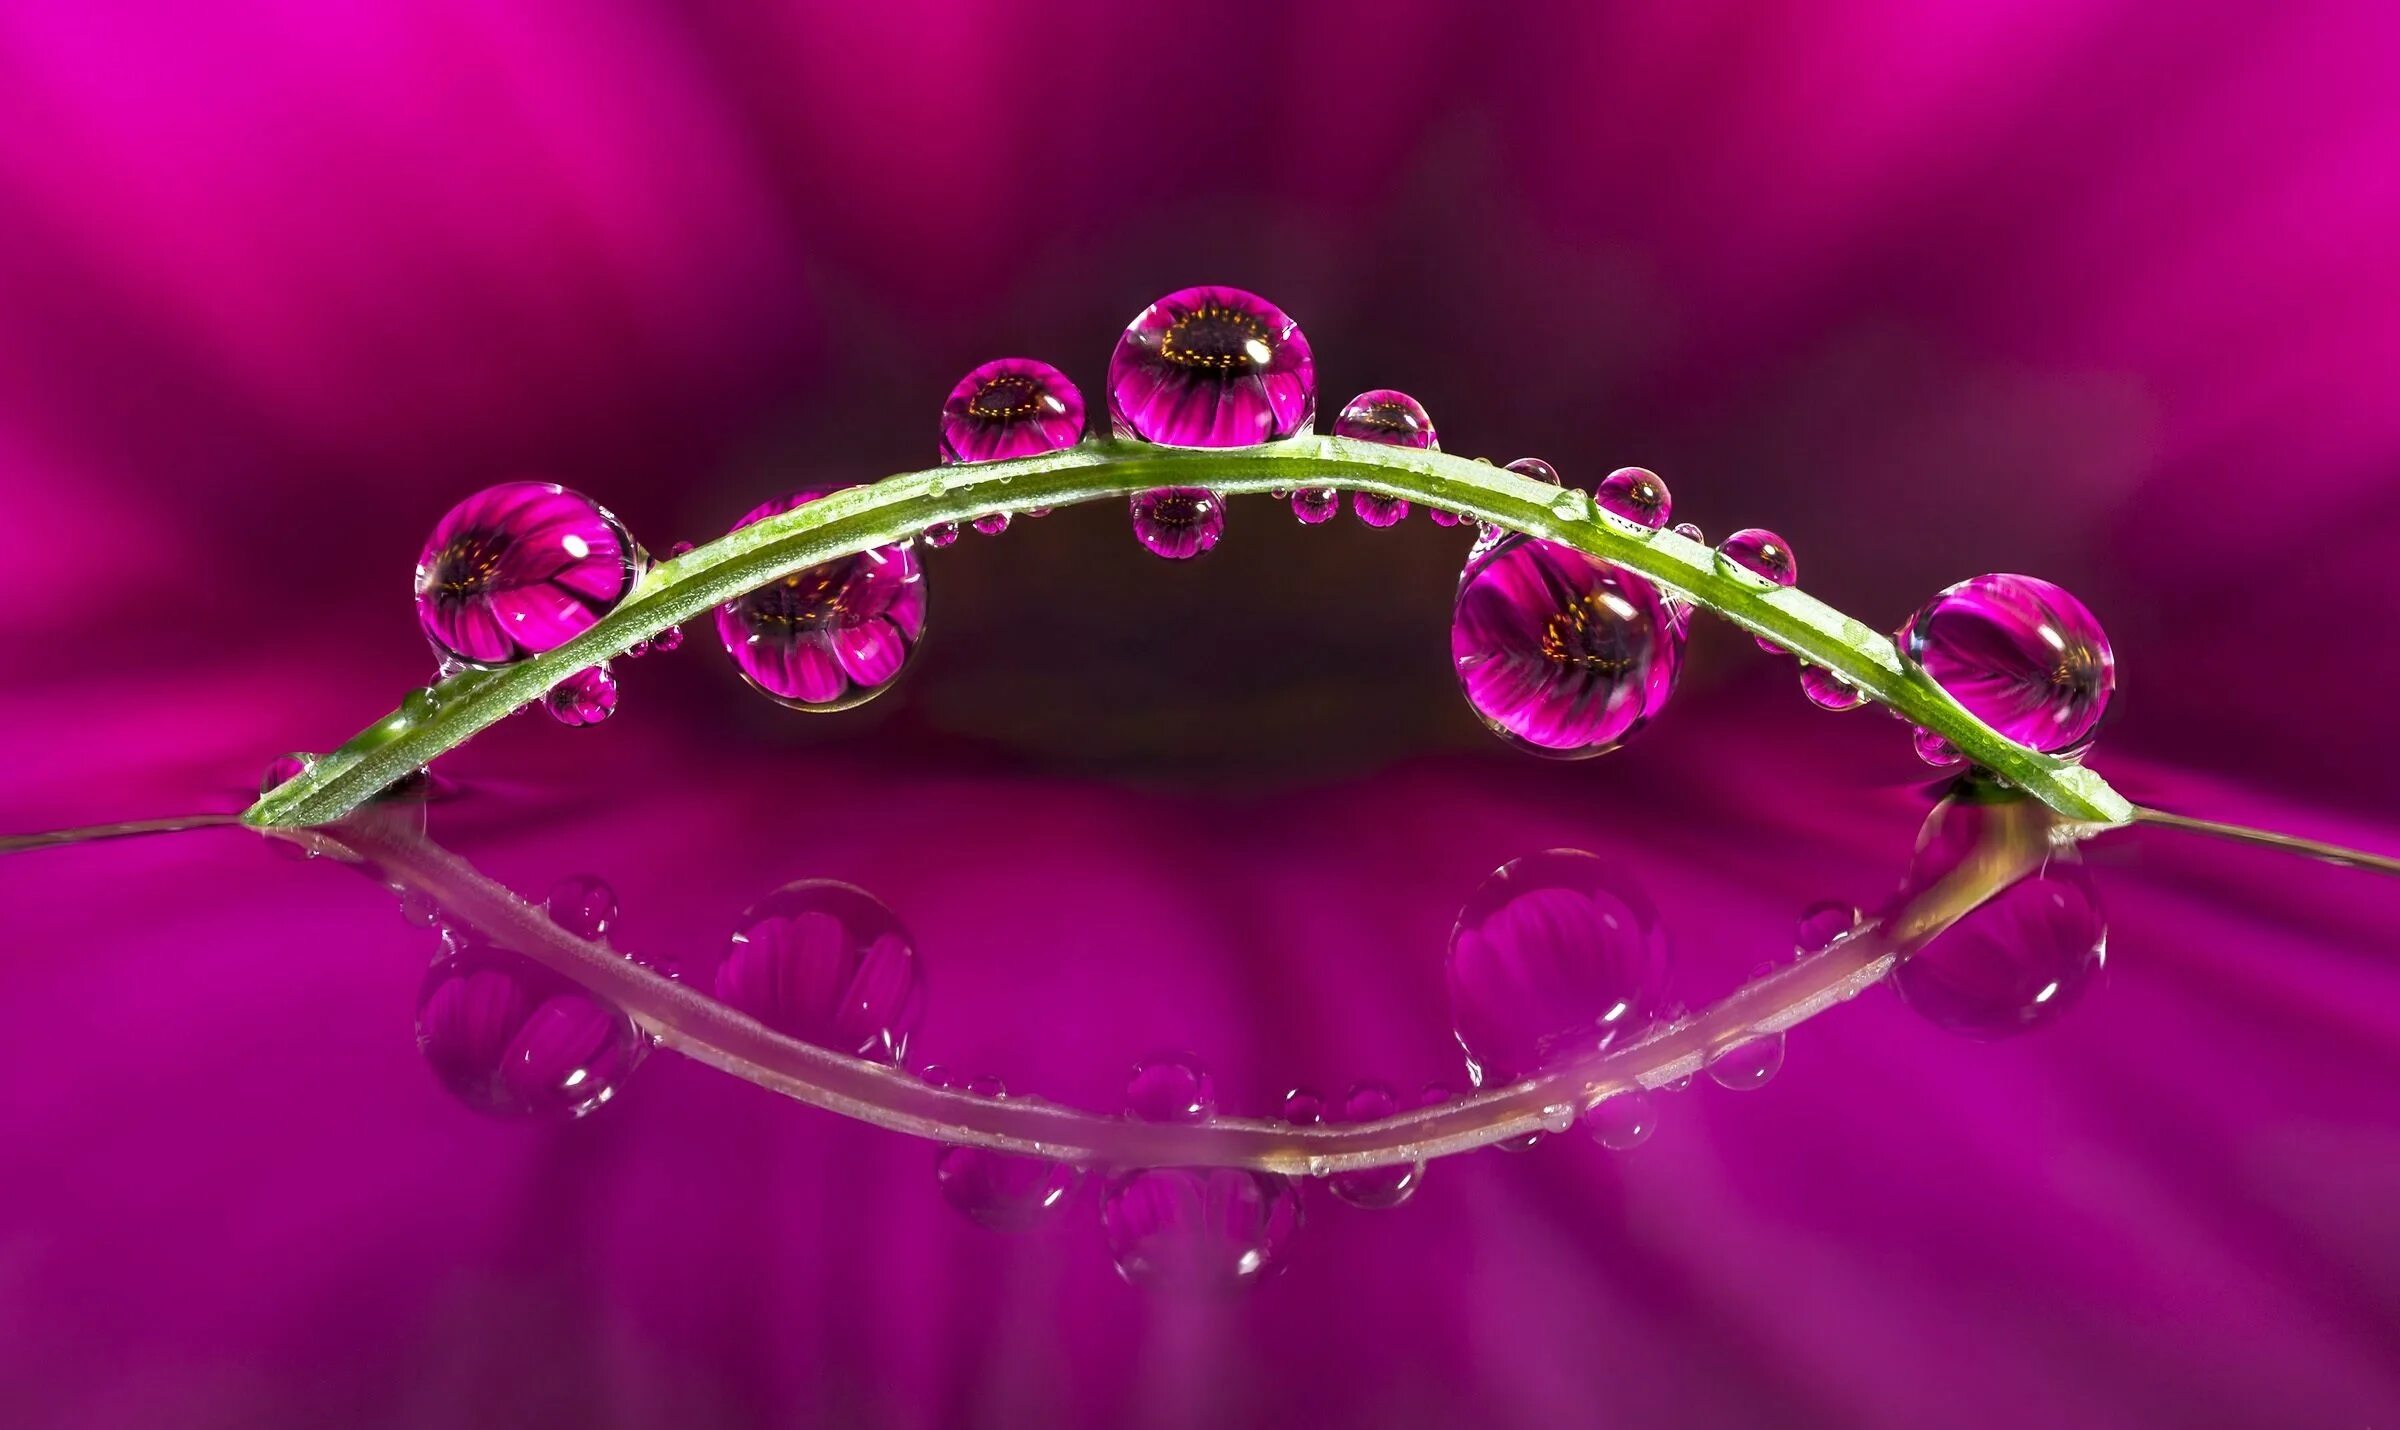 Drop flowers. Макросъемка. Цветы Макросъемка. Красивые макрофотографии цветов. Цветы с каплями воды.